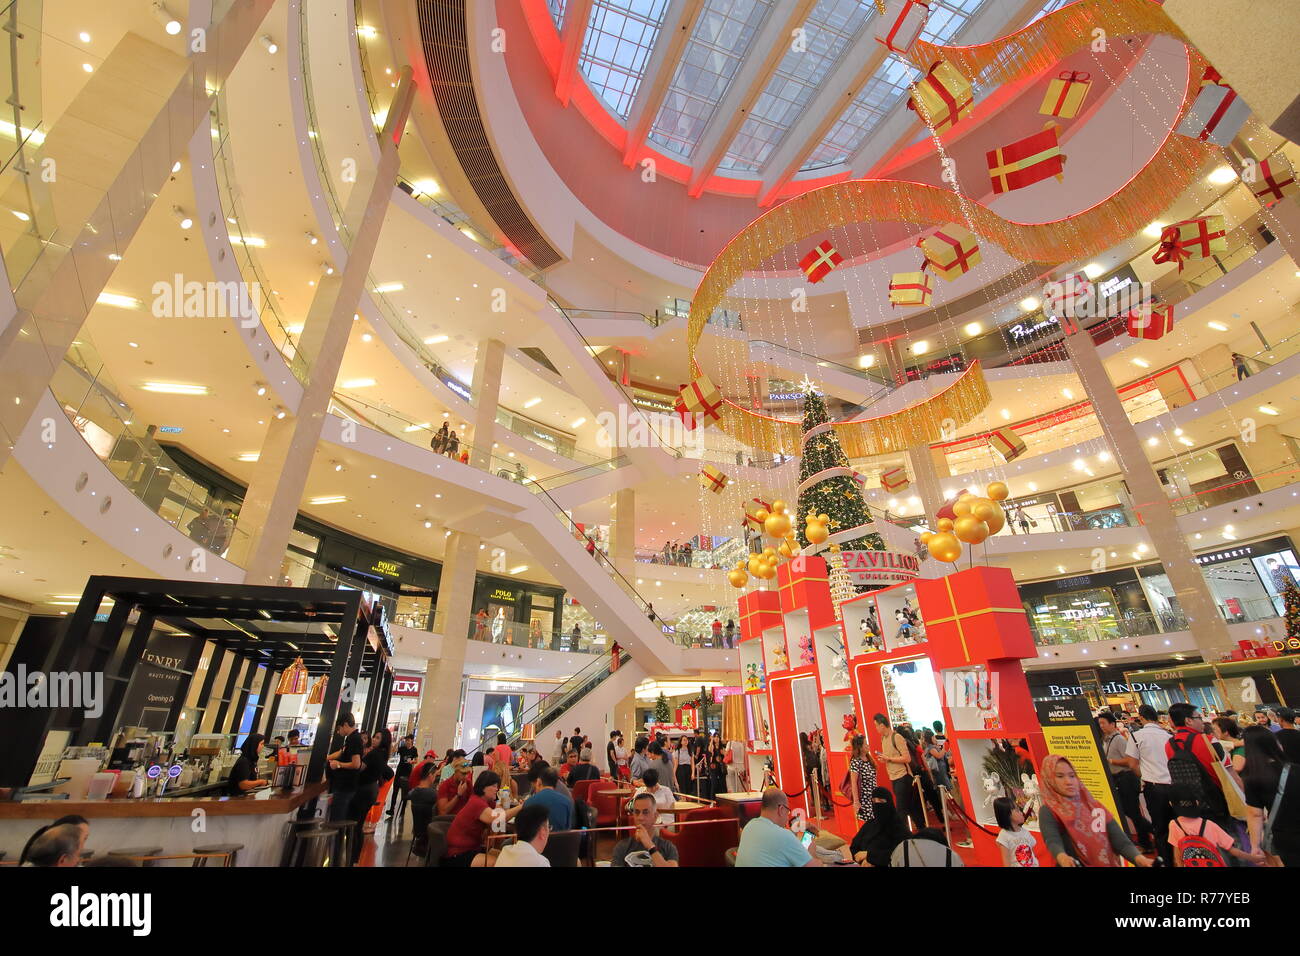 People visit Pavilion shopping mall in Bukit Bintang Kuala Lumpur ...